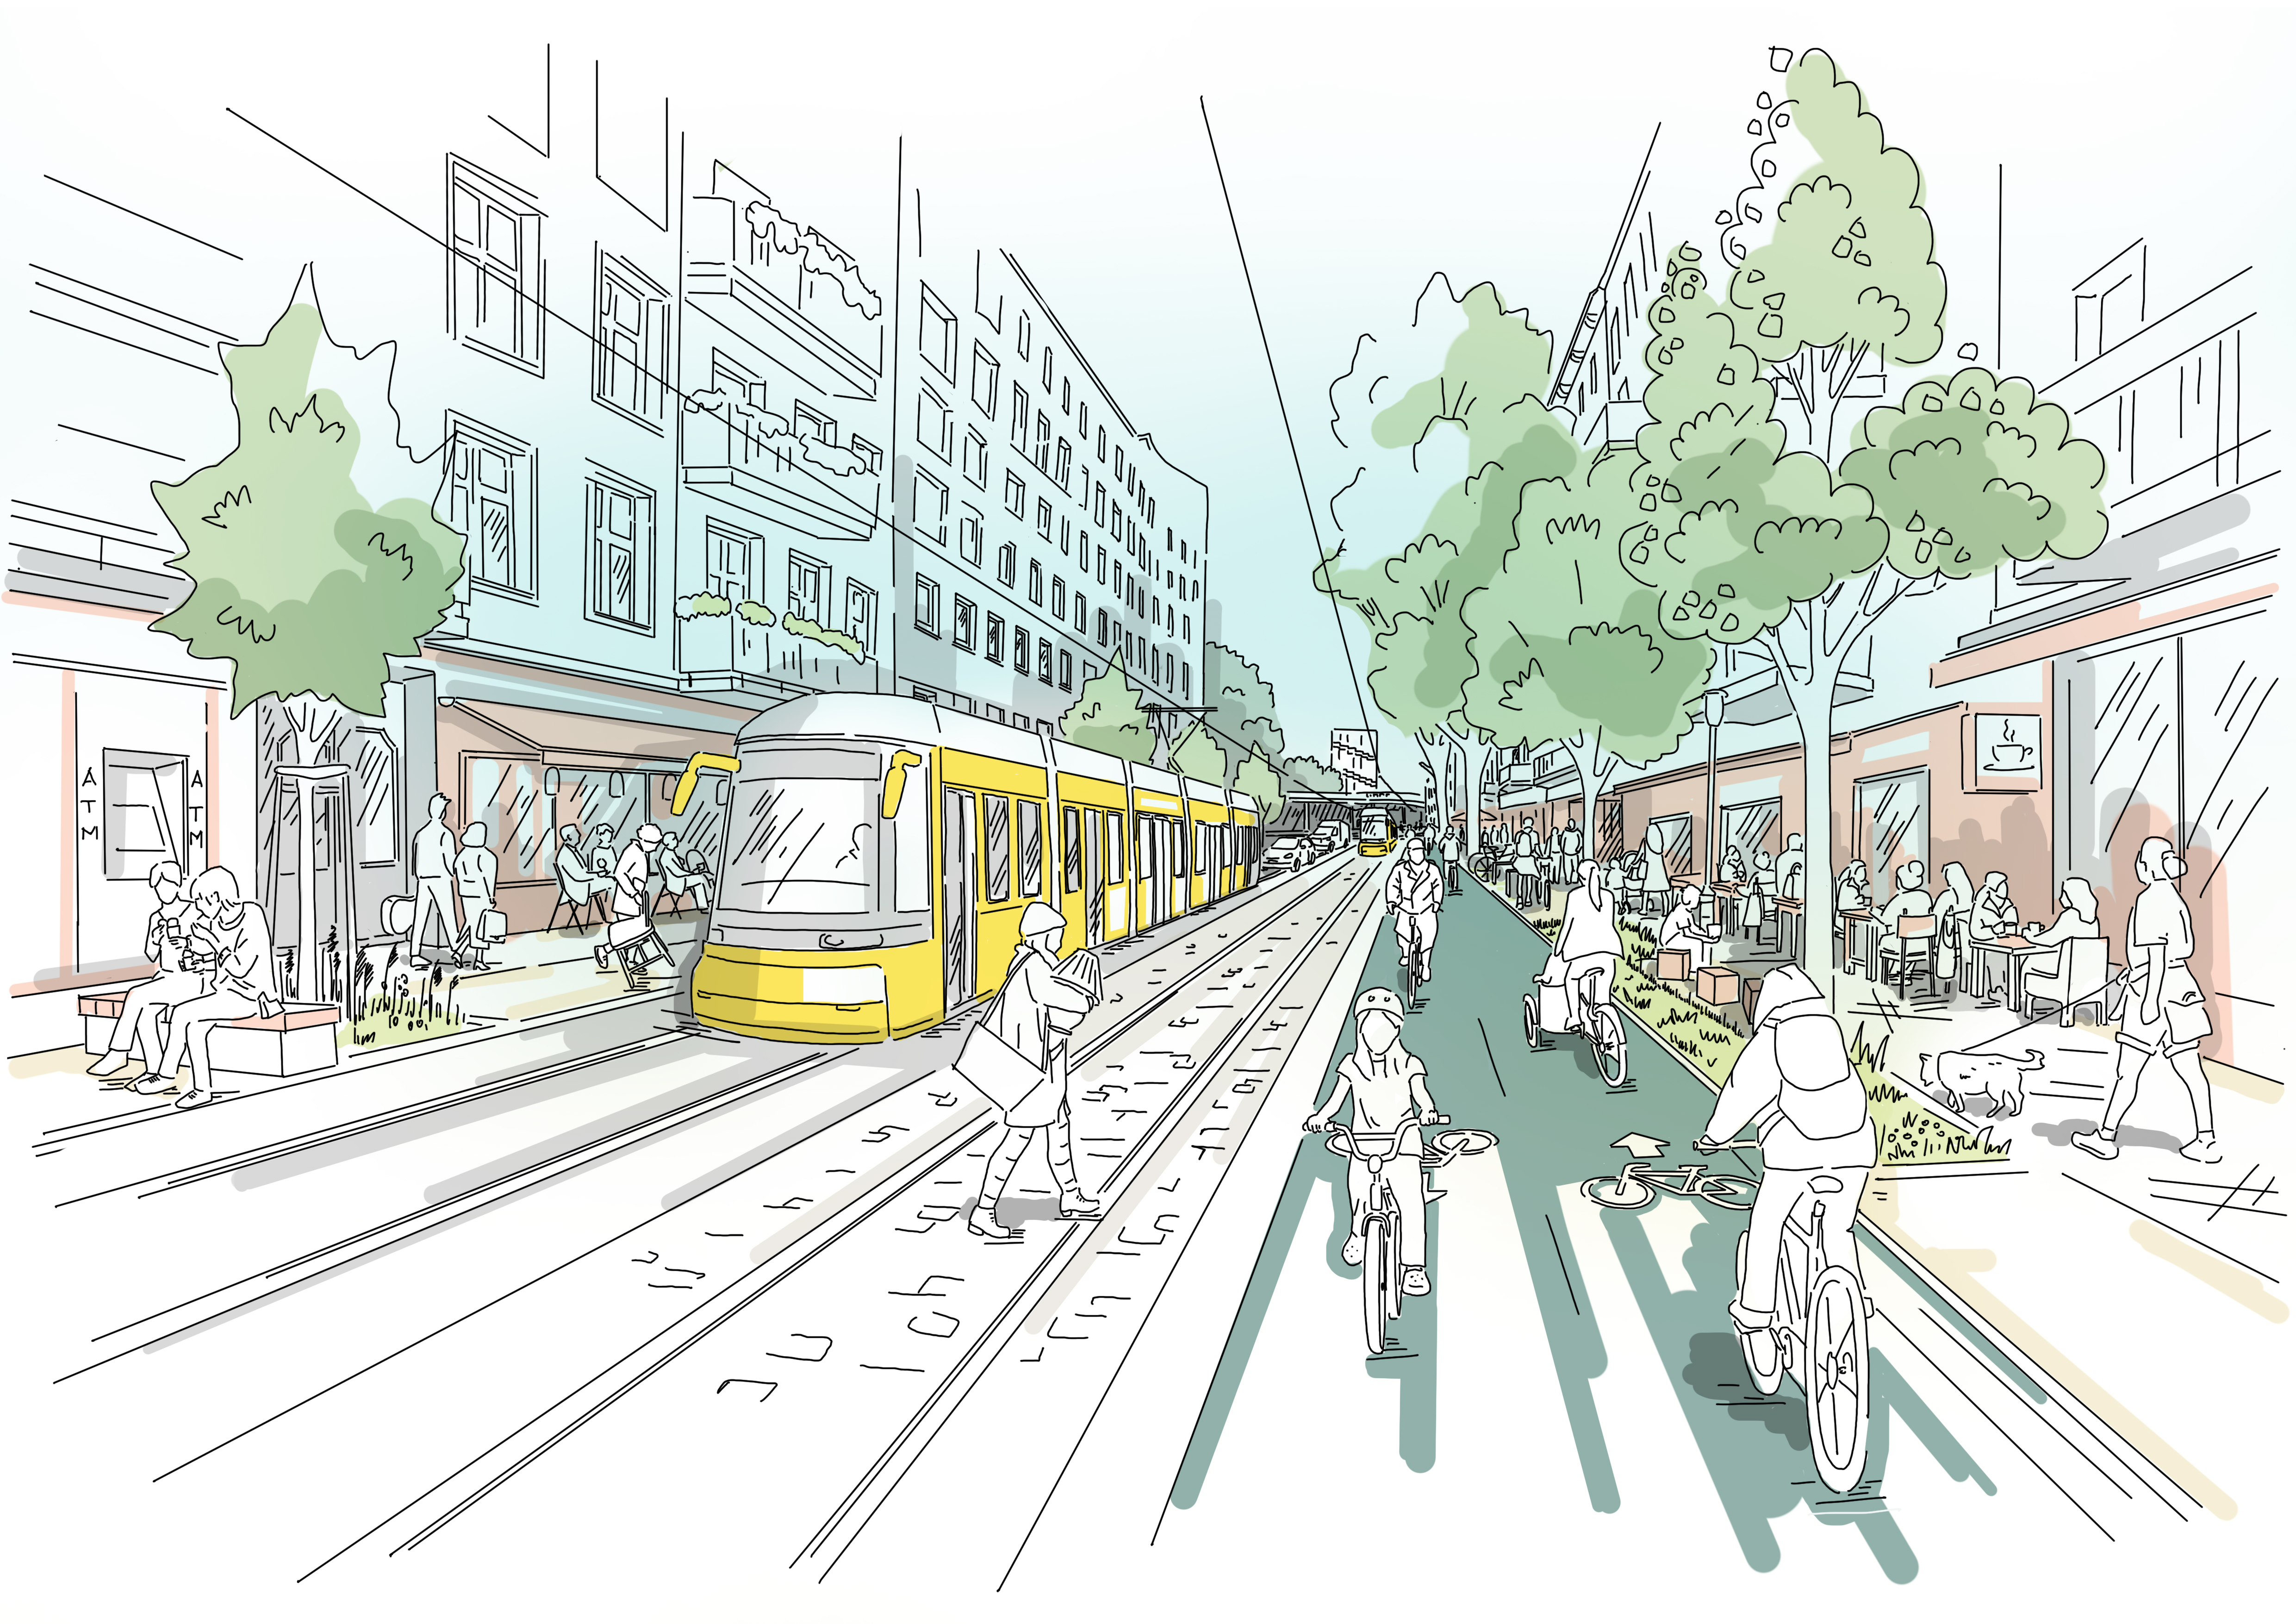 Diese Abbildung zeit eine skizzenhafte Darstellung der Straßenbahnführung in Seitenlage nach der Fertigstellung des Projekts